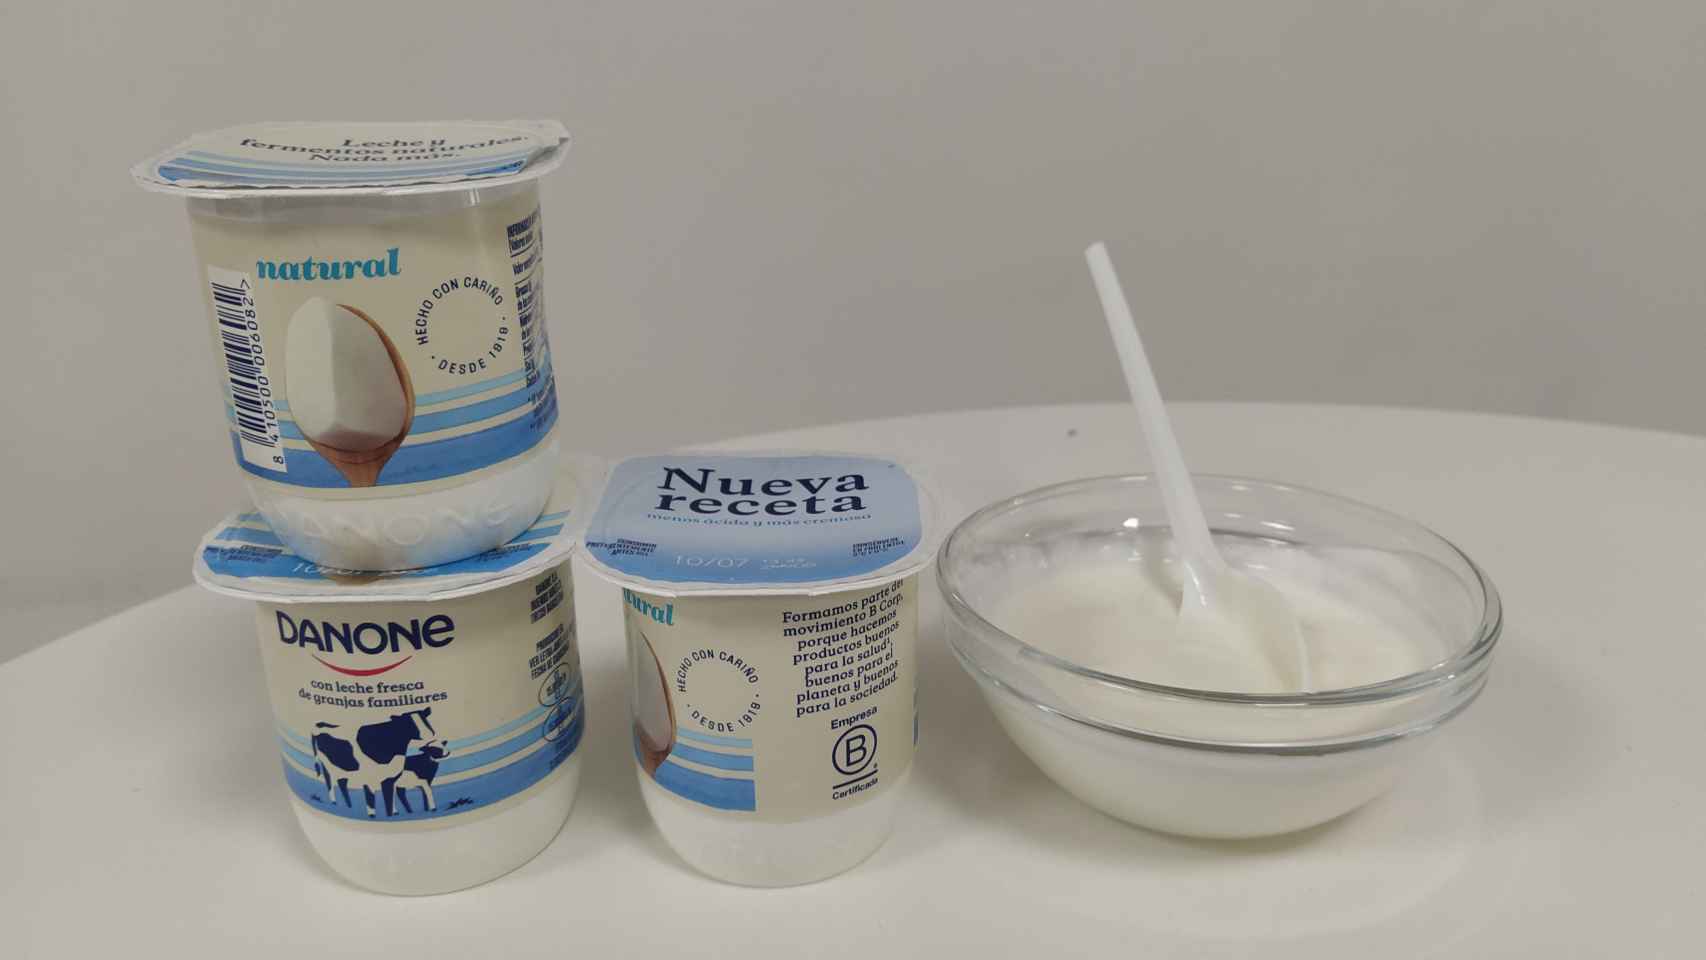 Los yogures de Danone naturales.